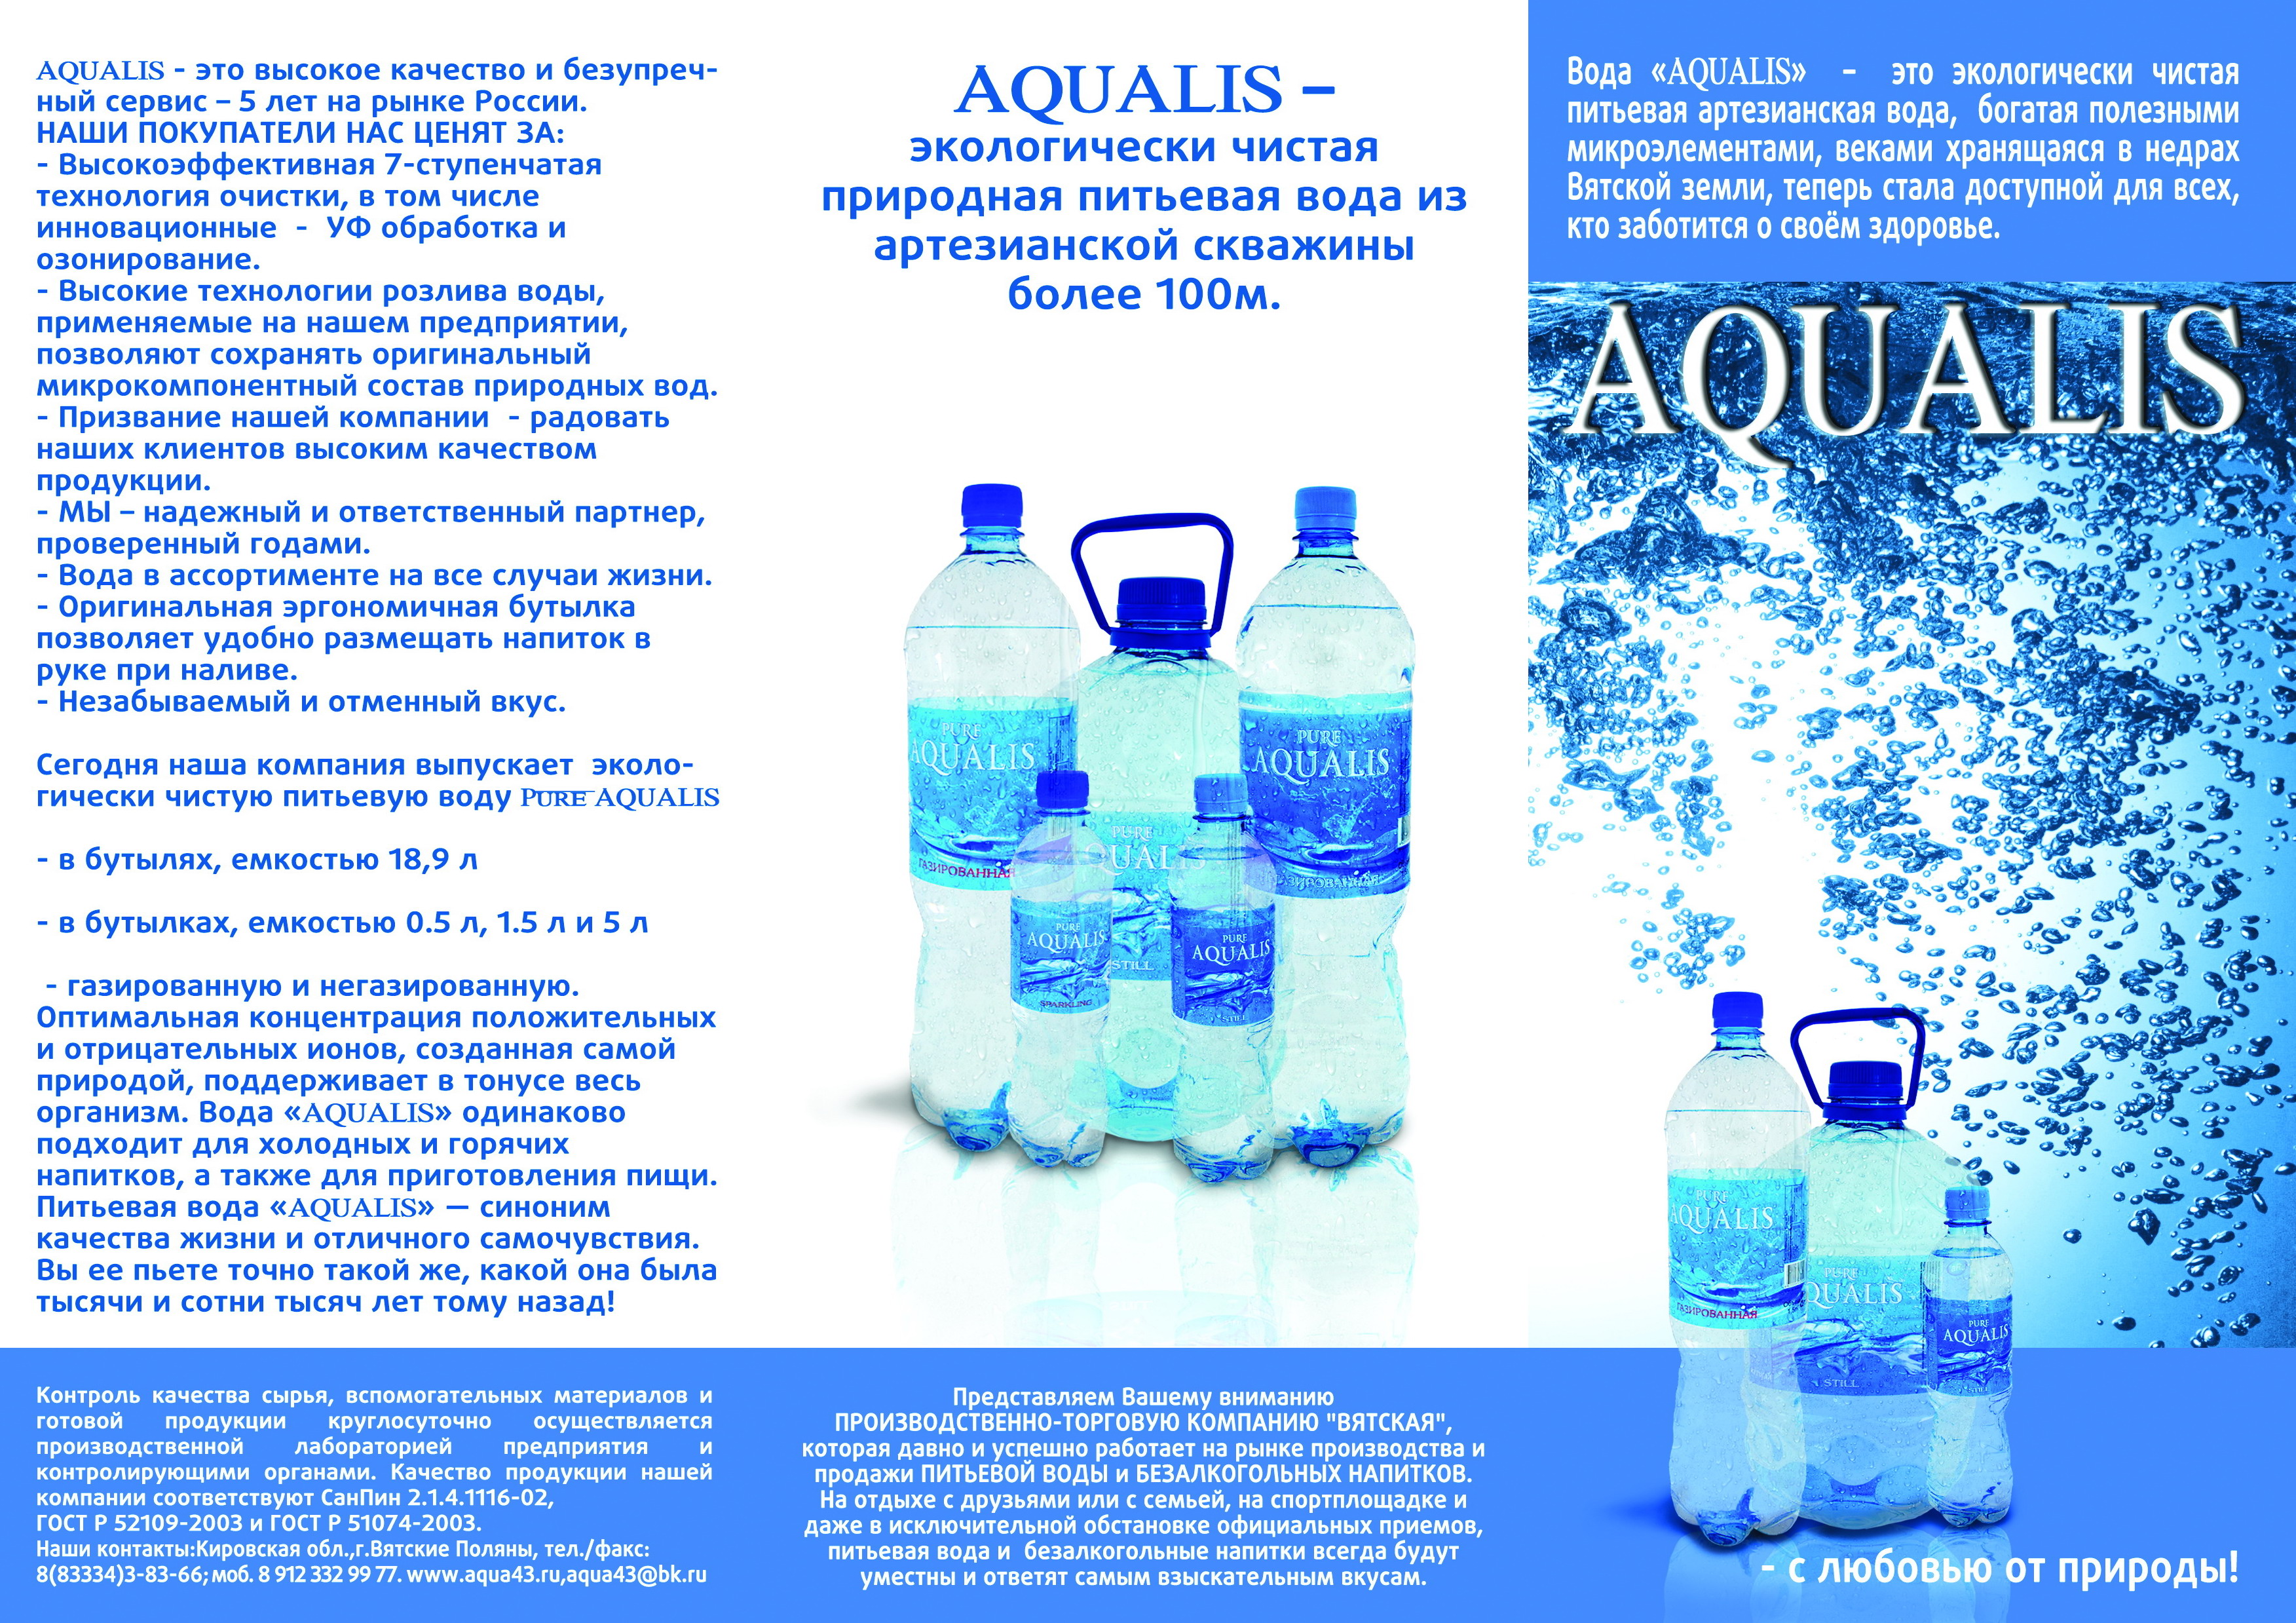 Питьевая вода самостоятельно. Вода питьевая артезианская. Артезианская вода реклама. Чистая артезианская вода. Вода артезианская продукция.